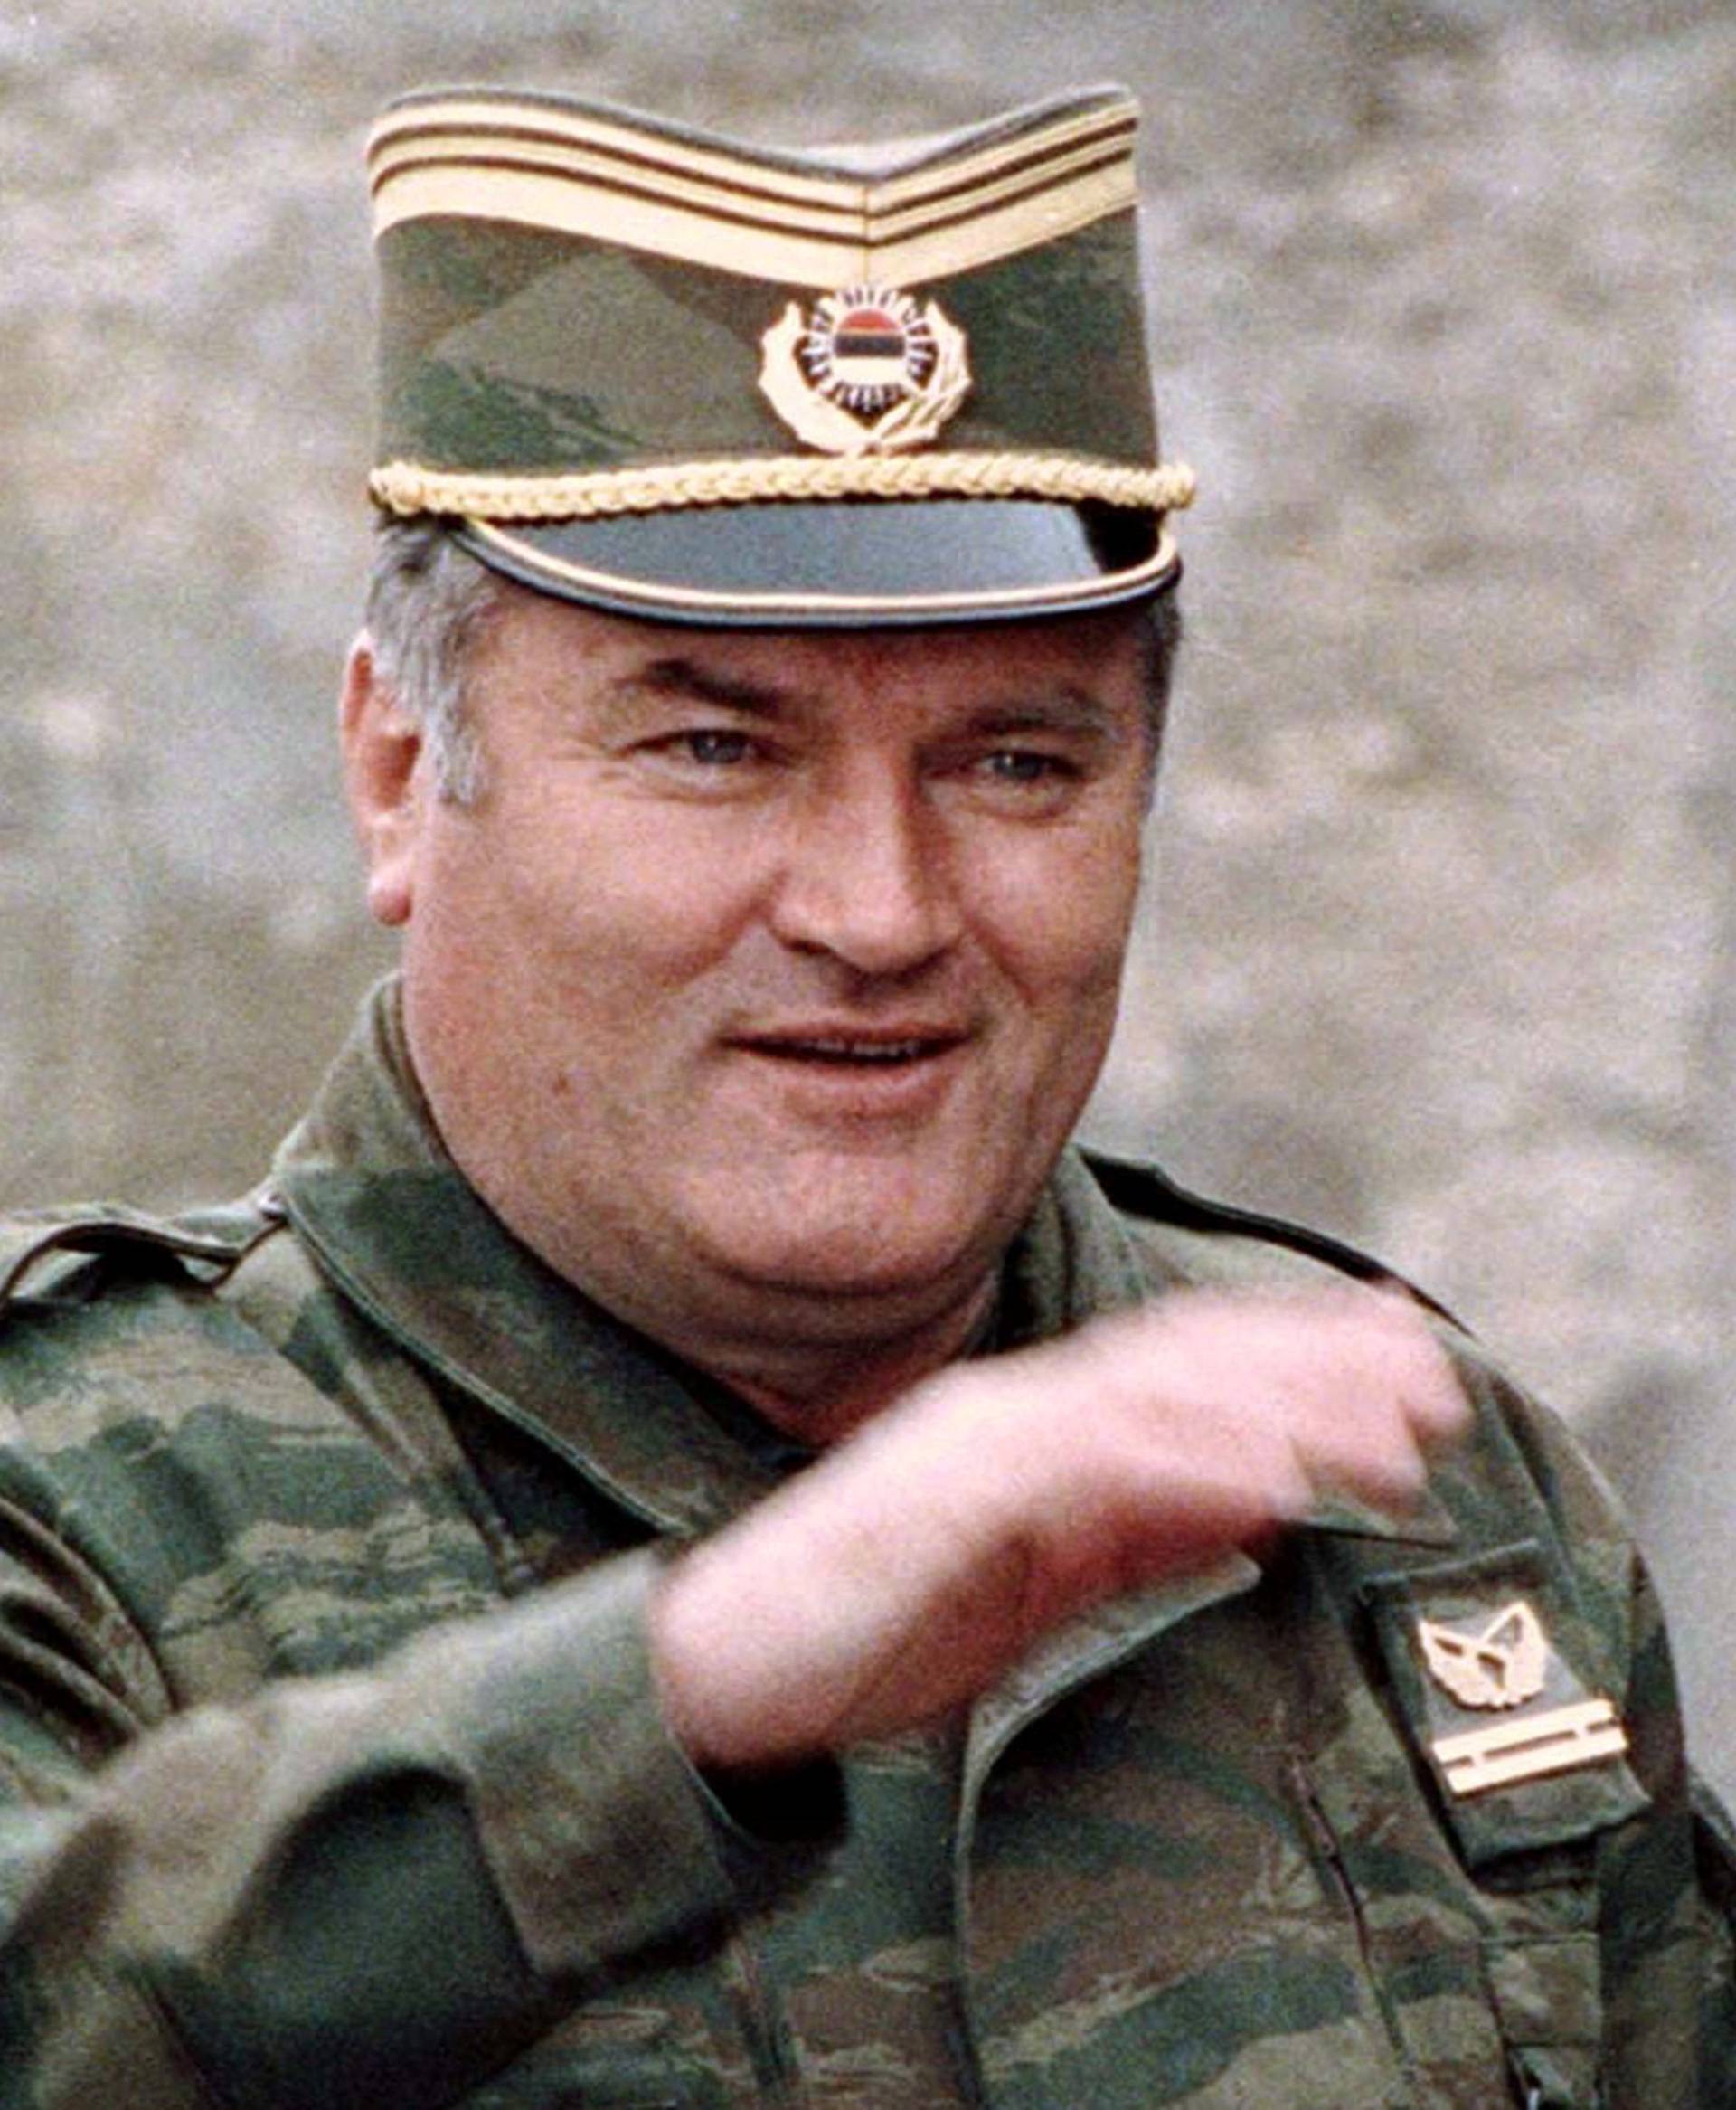 FILE PHOTO: Bosnian Serb wartime general Ratko Mladic